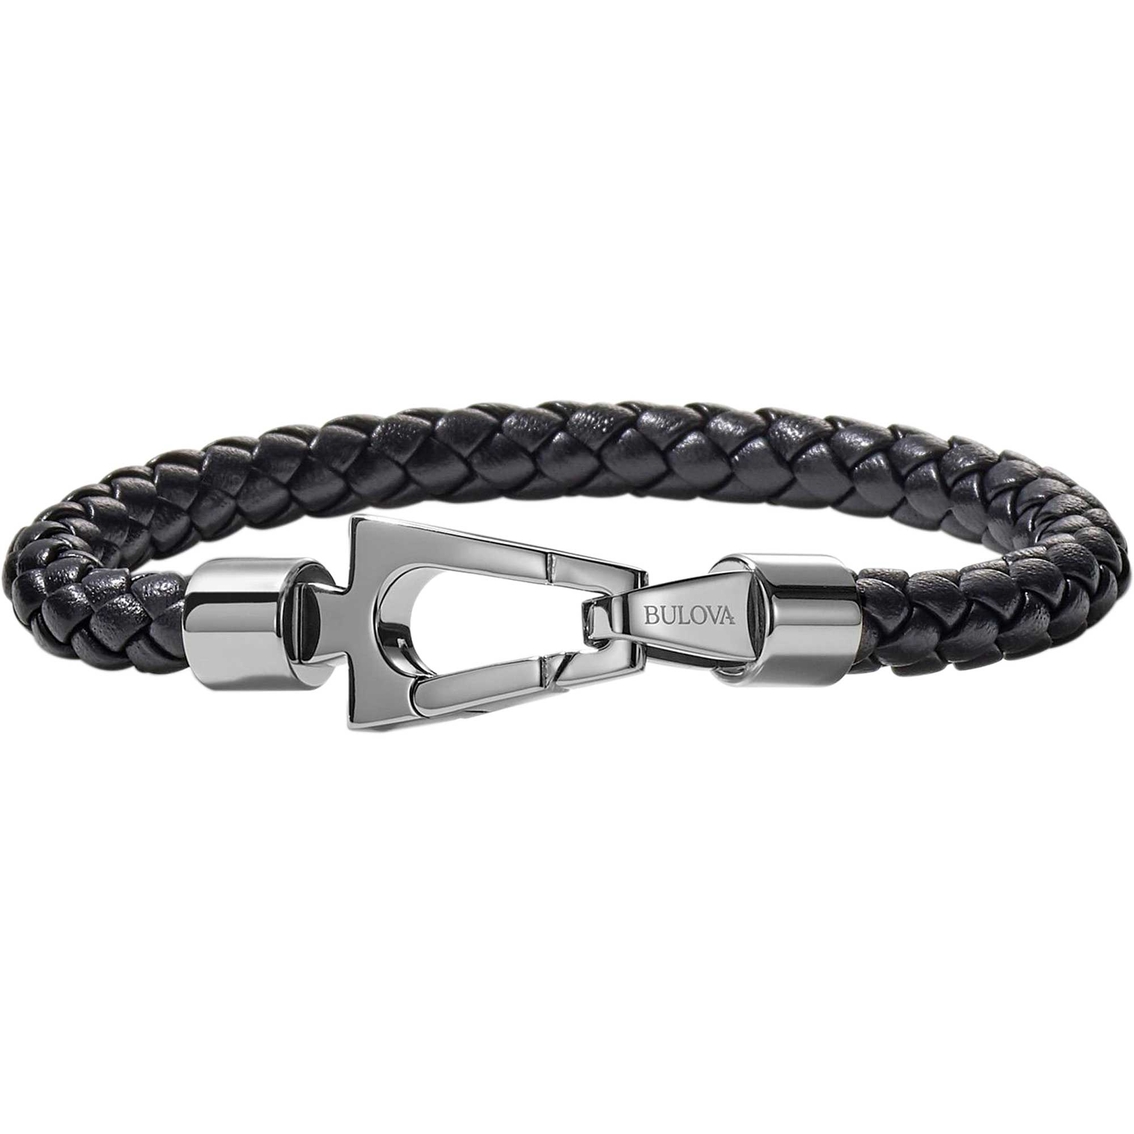 Bulova Marine Star Black Braided Leather Bracelet | Bracelets | Jewelry ...